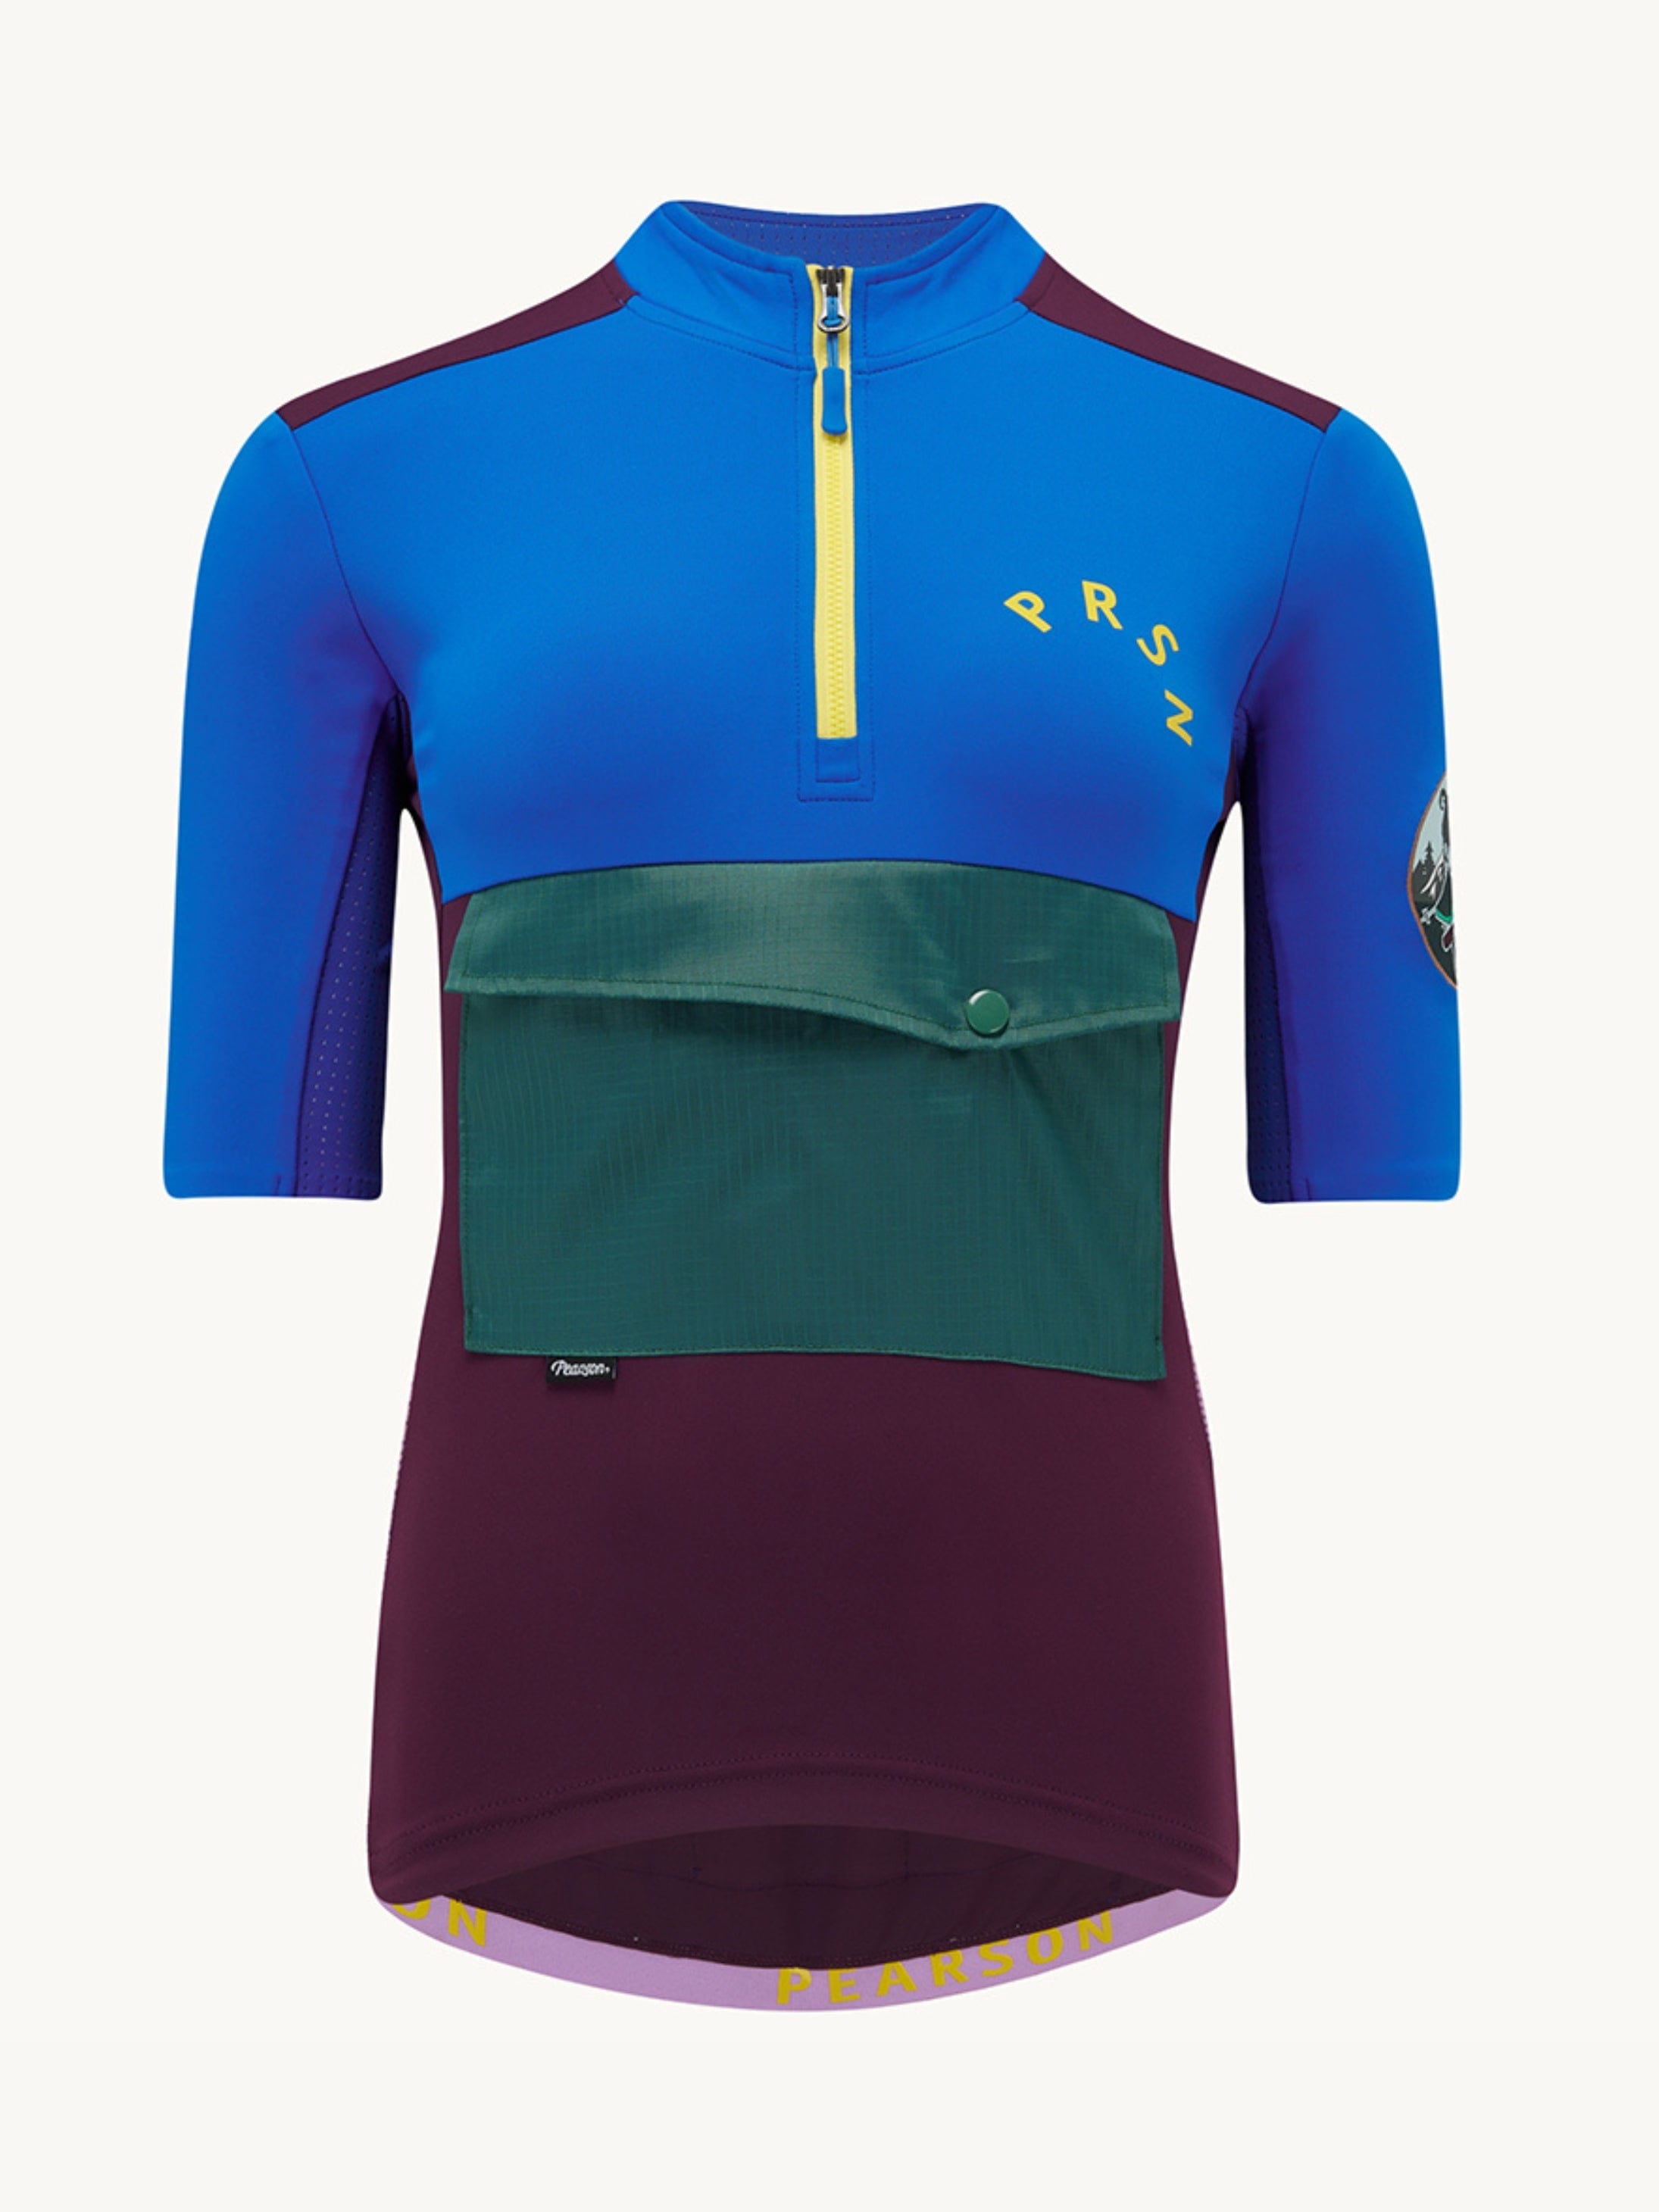 Pearson Cycles Pearson1860, Stowaway - Women's Adventure Short Sleeve Jersey, Deep Purple / XL